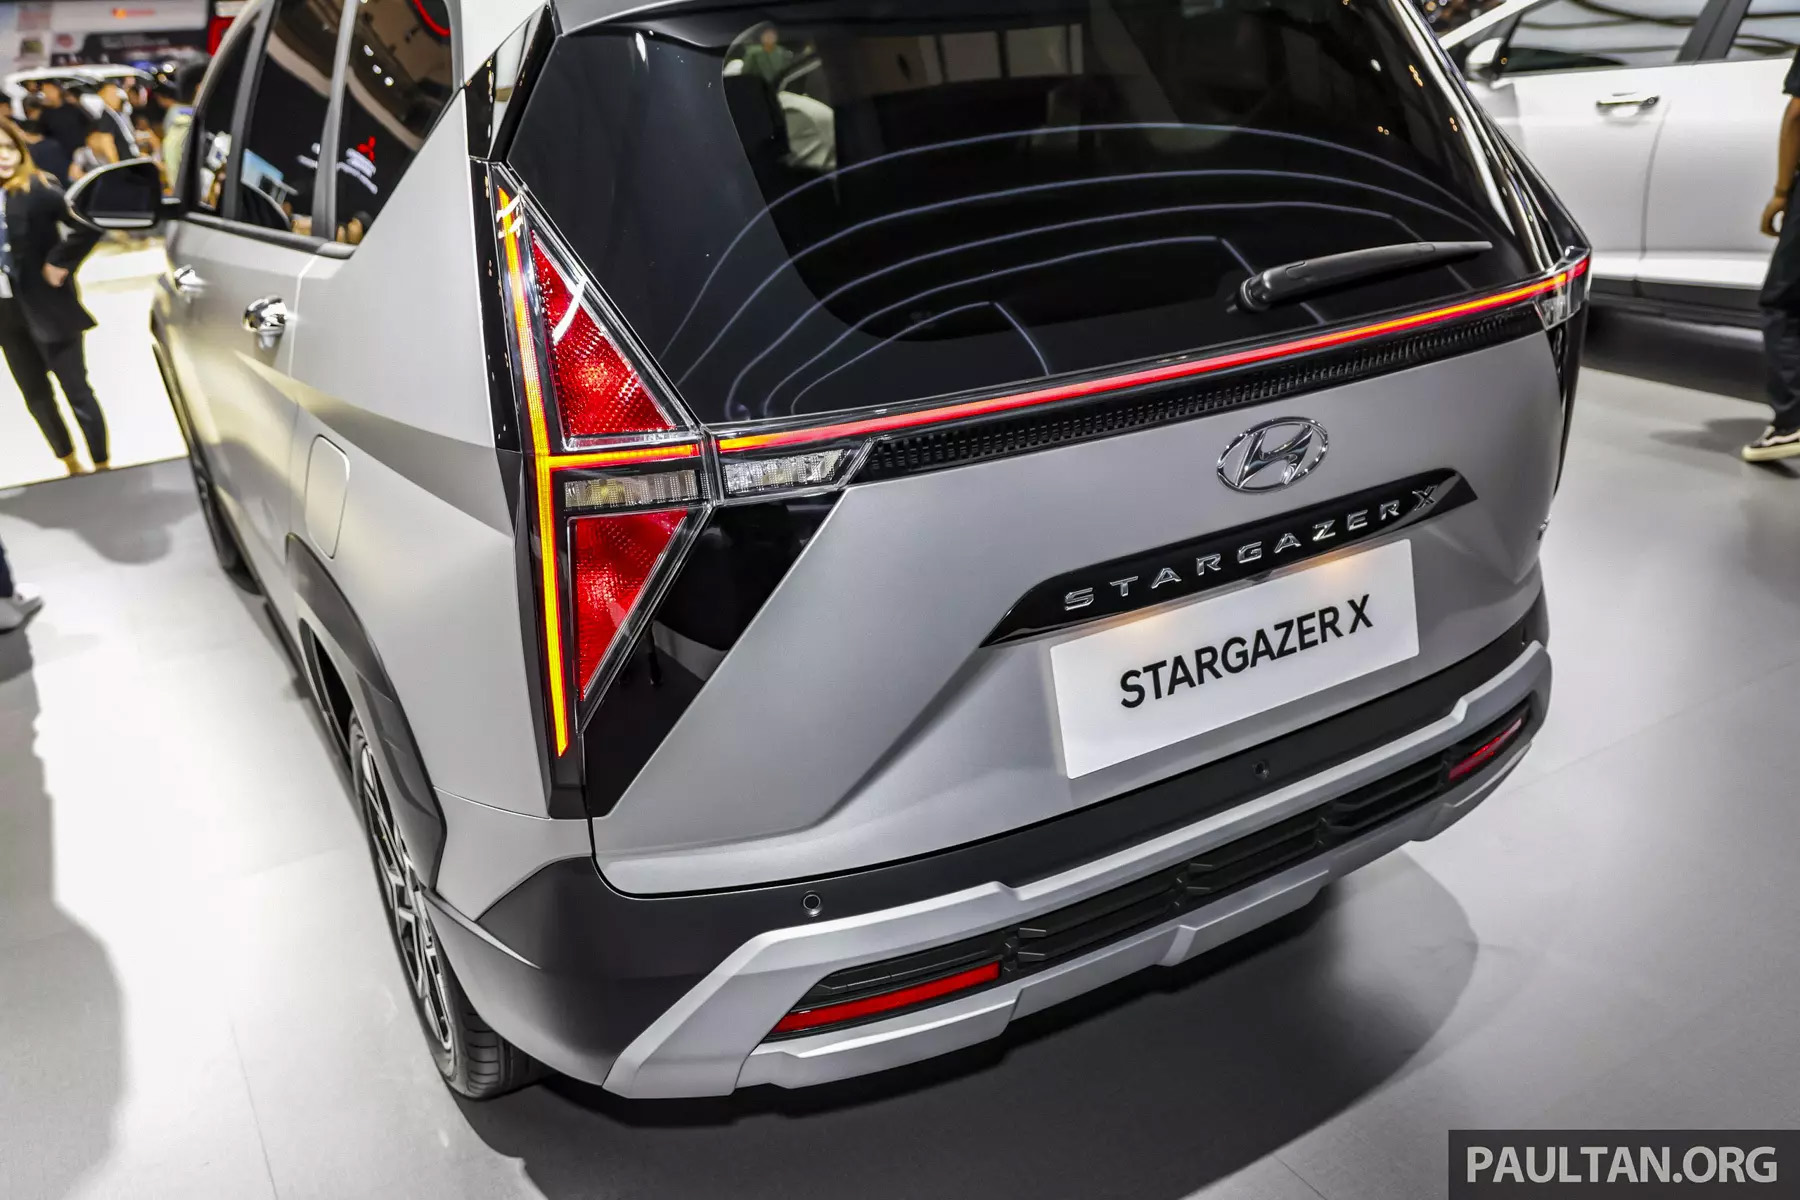 Представили бюджетный минивэн-кроссовер Hyundai Stargazer X на базе платформы Creta